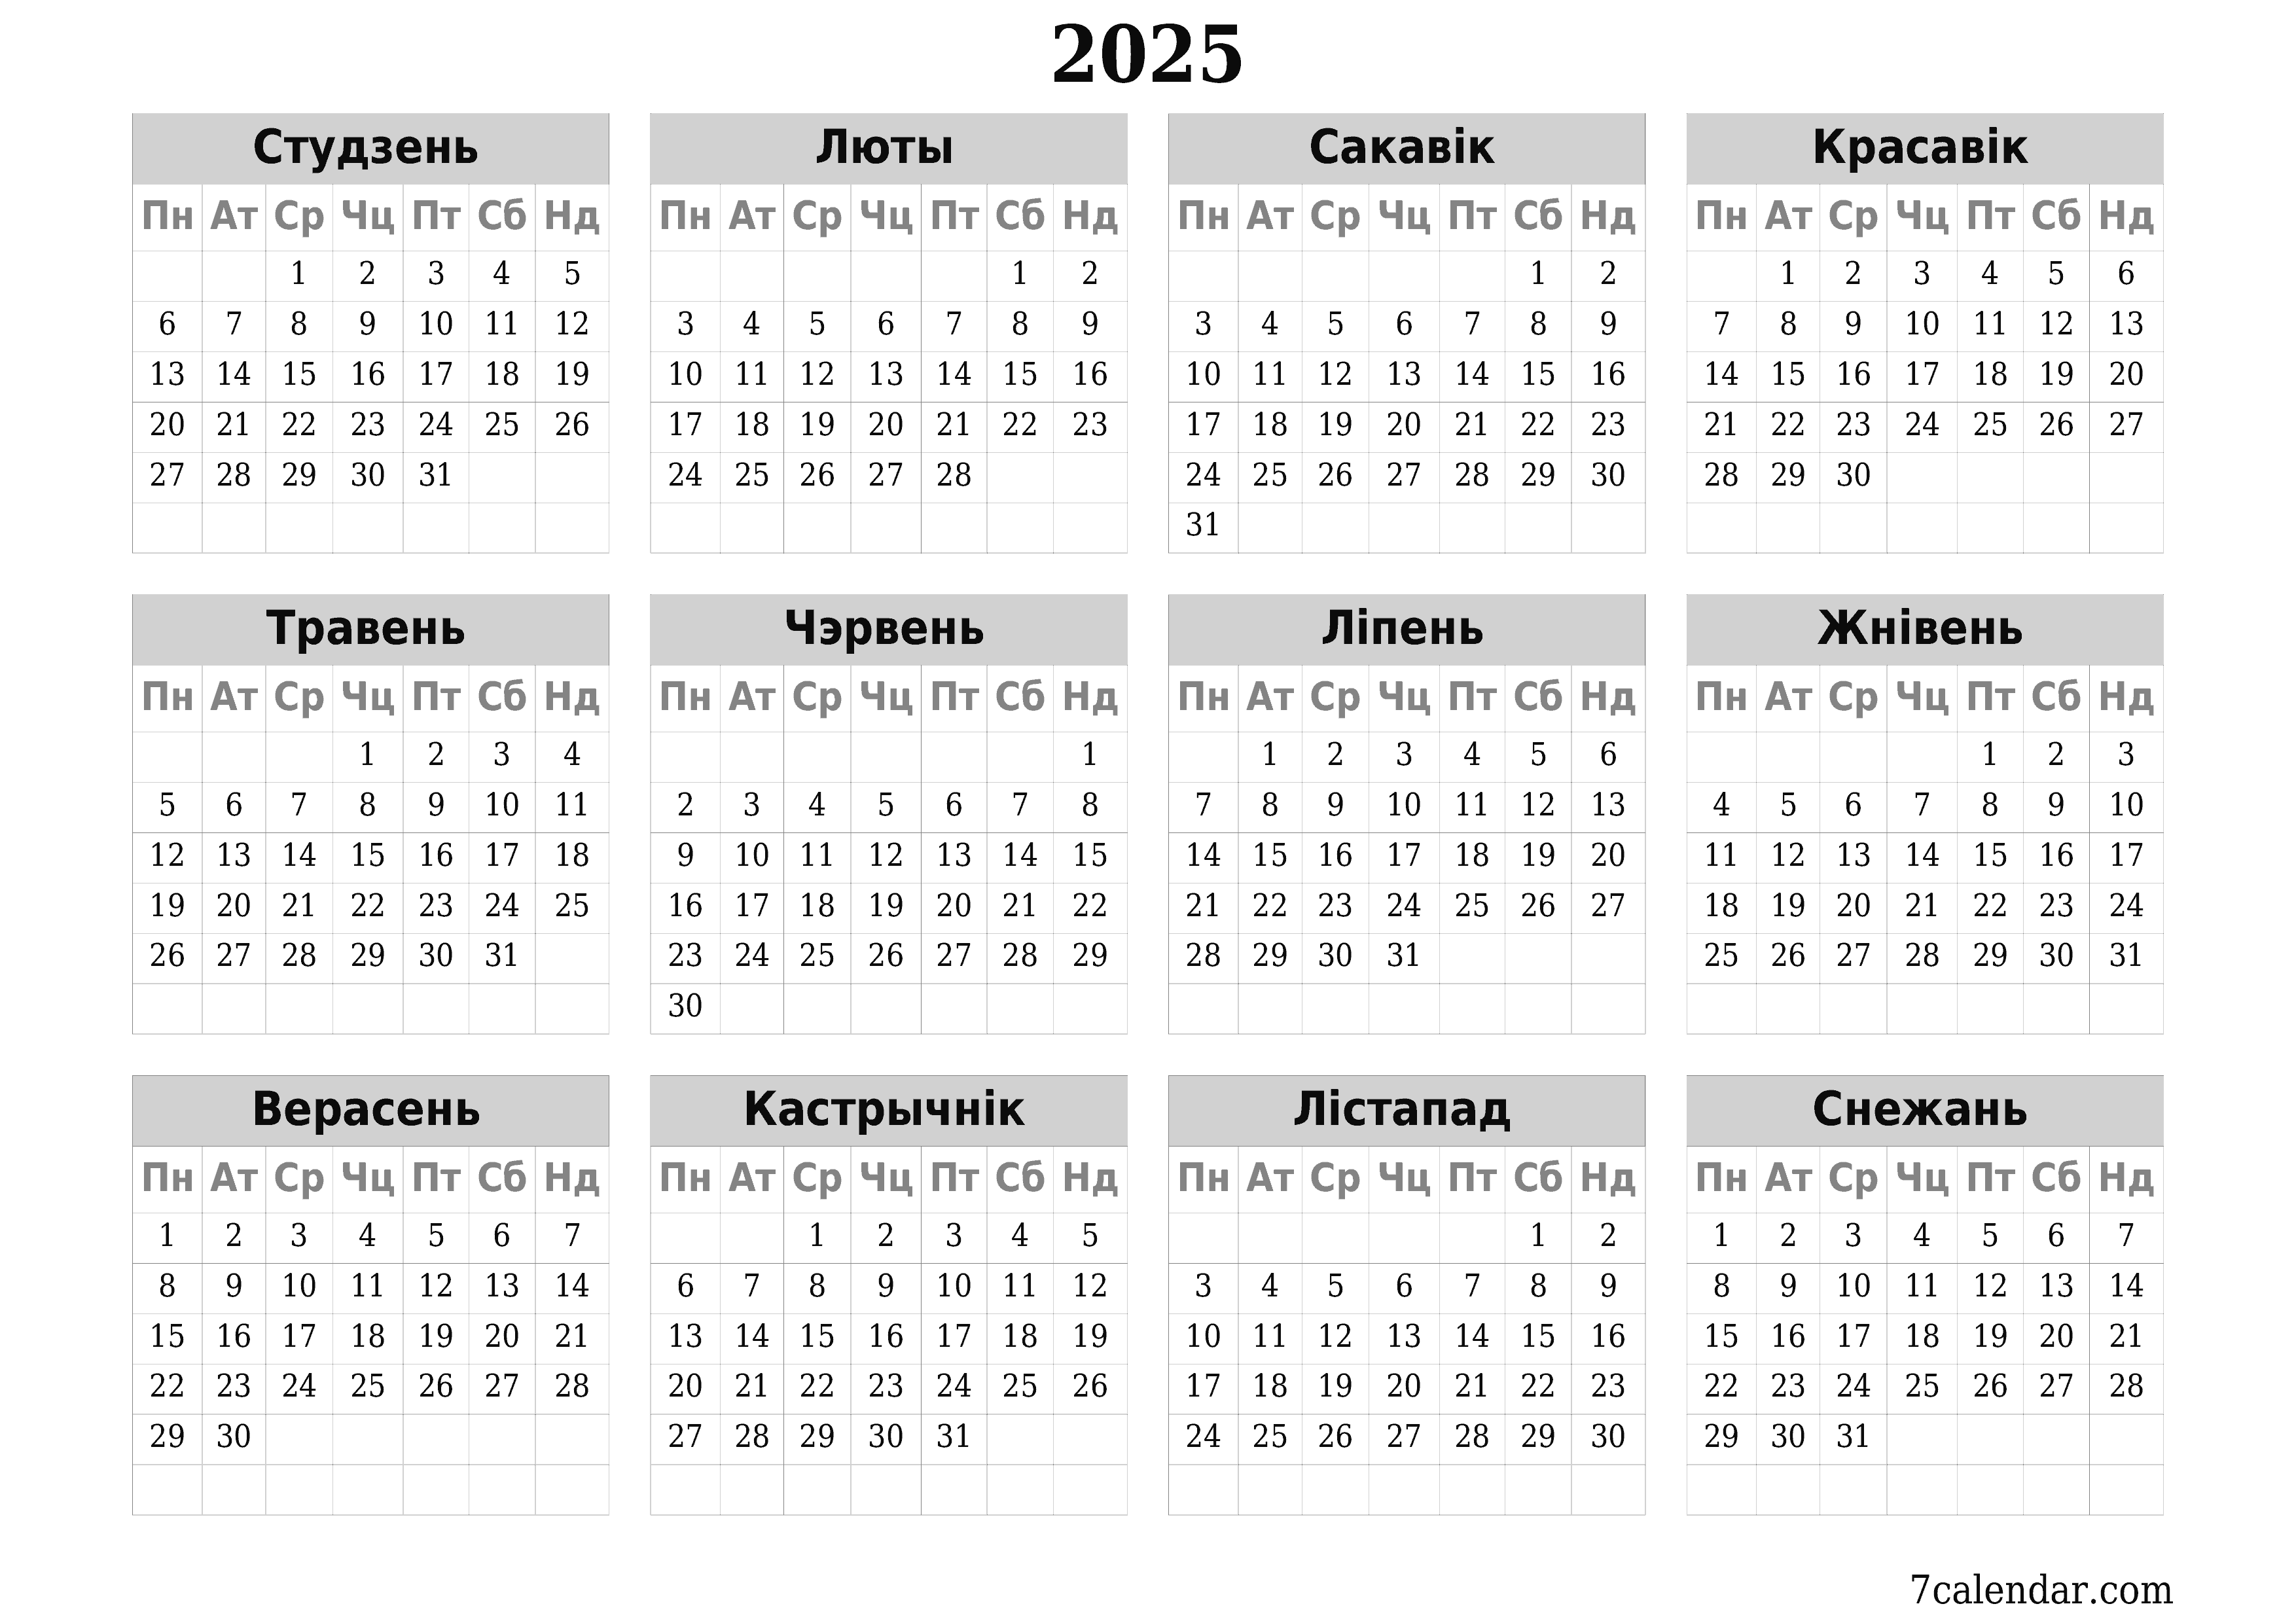  для друку насценны шаблон календара бясплатны гарызантальны Штогадовы каляндар Люты (Лют) 2025